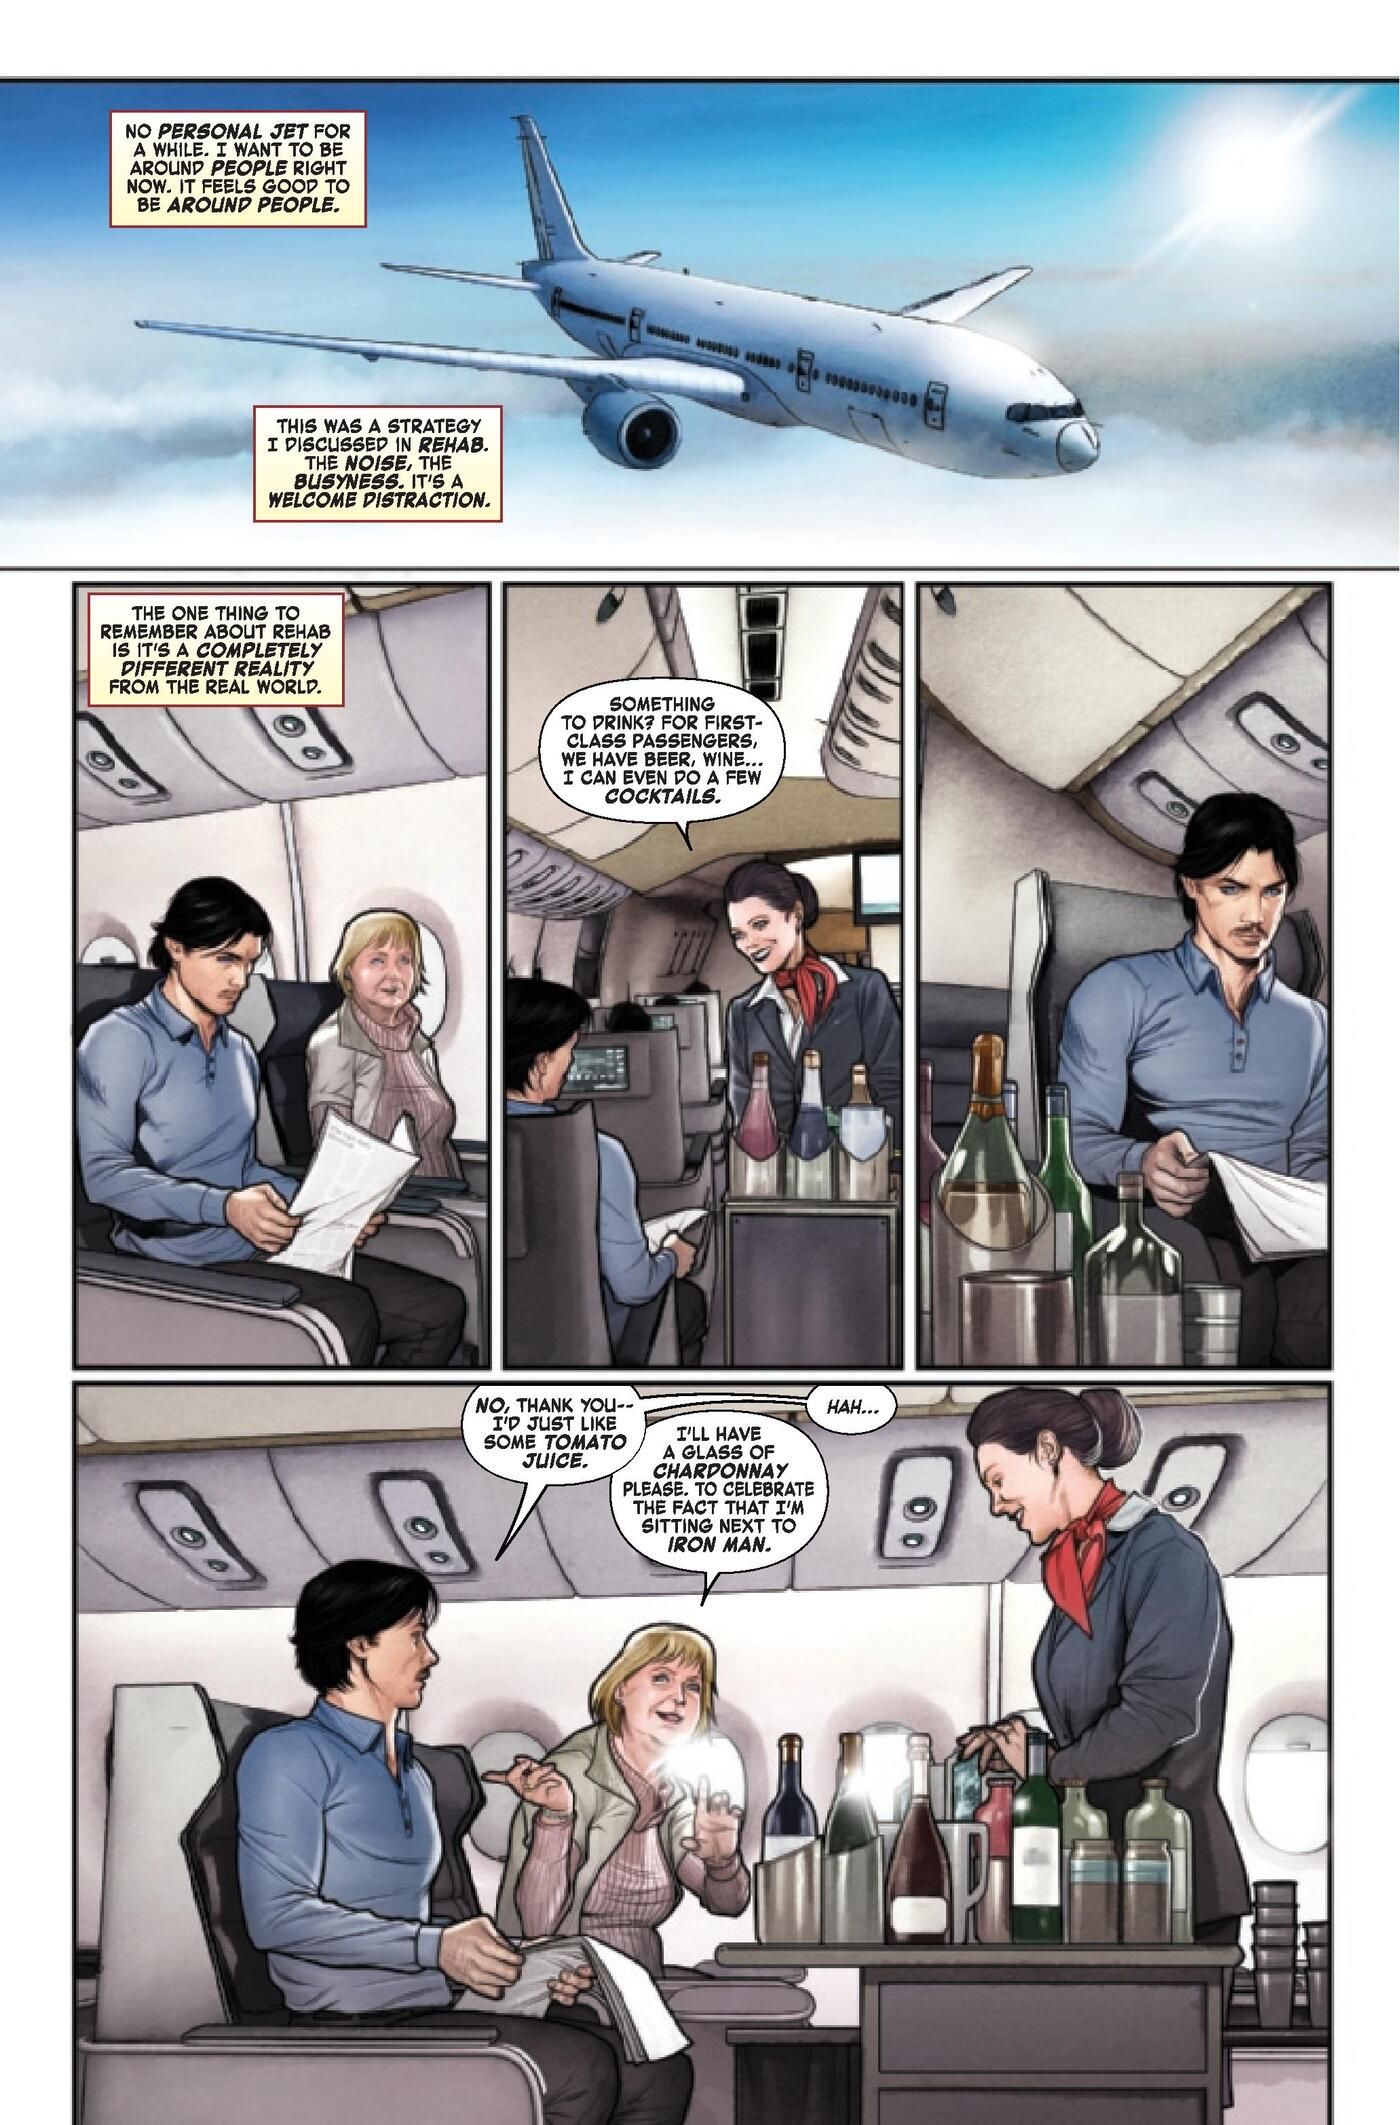 Iron Man Tony Stark plane hostess